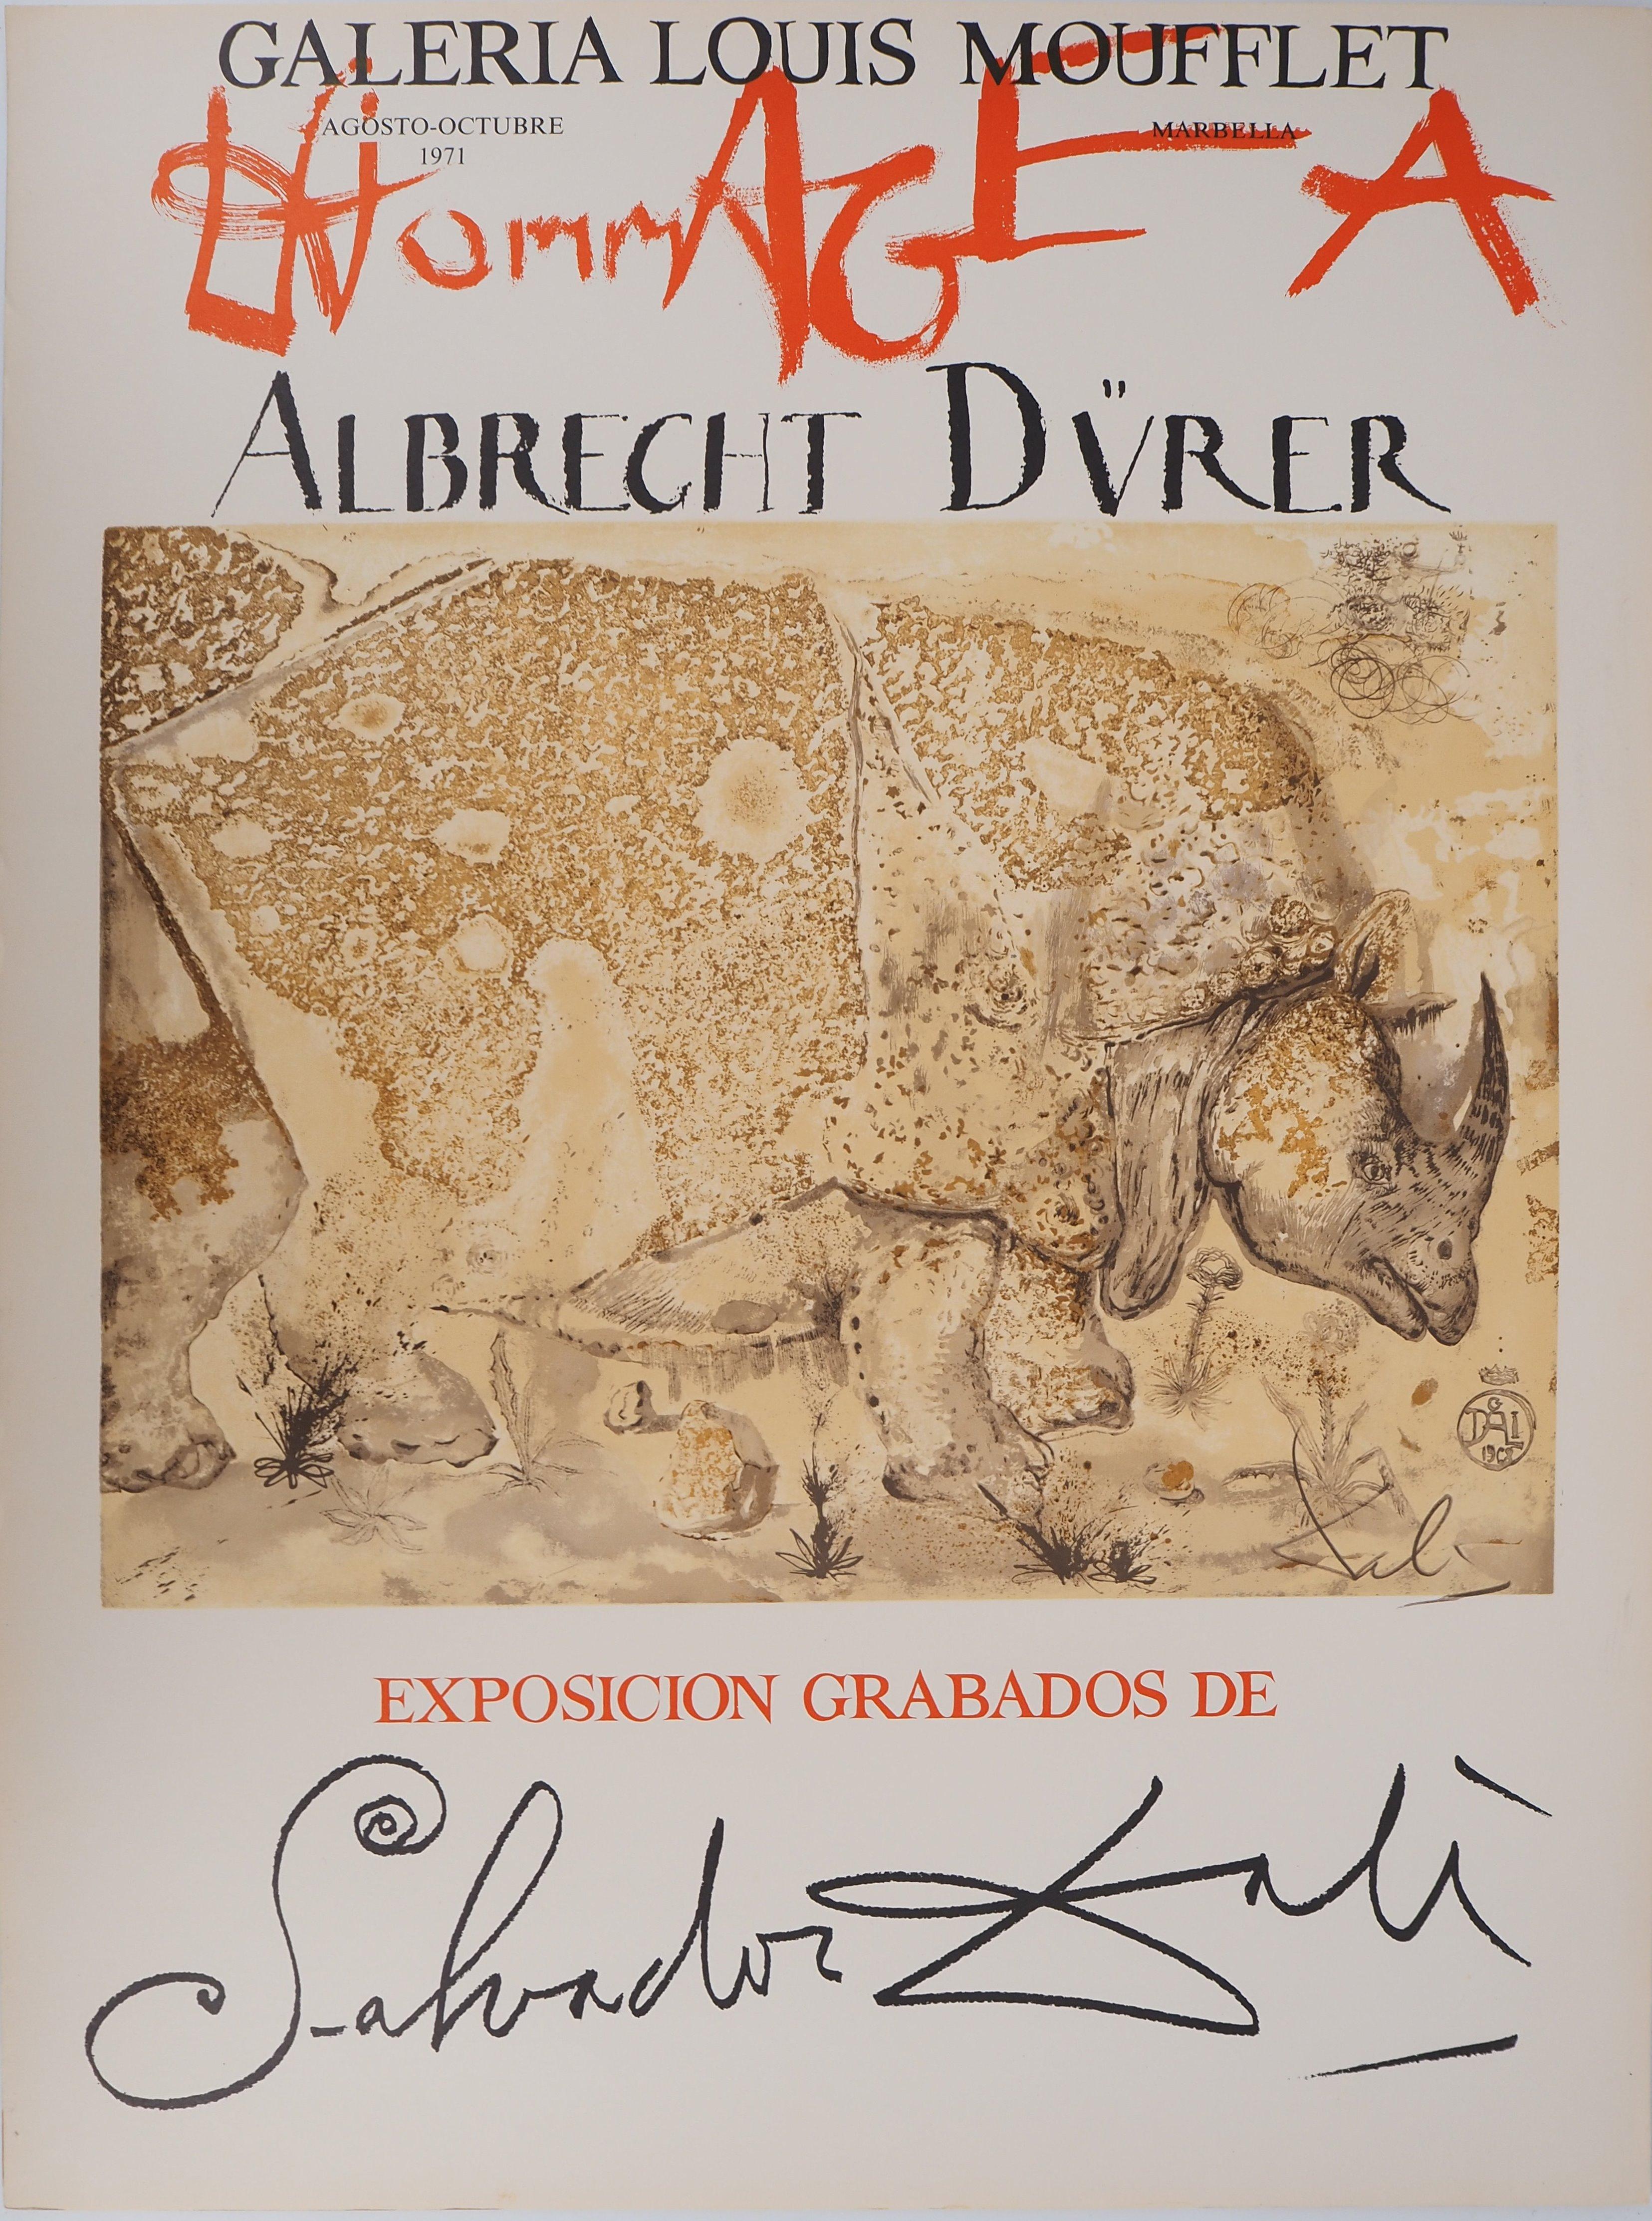 Animal Print Salvador Dalí - Rhinoceros, Hommage à Albrecht DURER - Affiche lithographique originale (Gaspar n° 1503